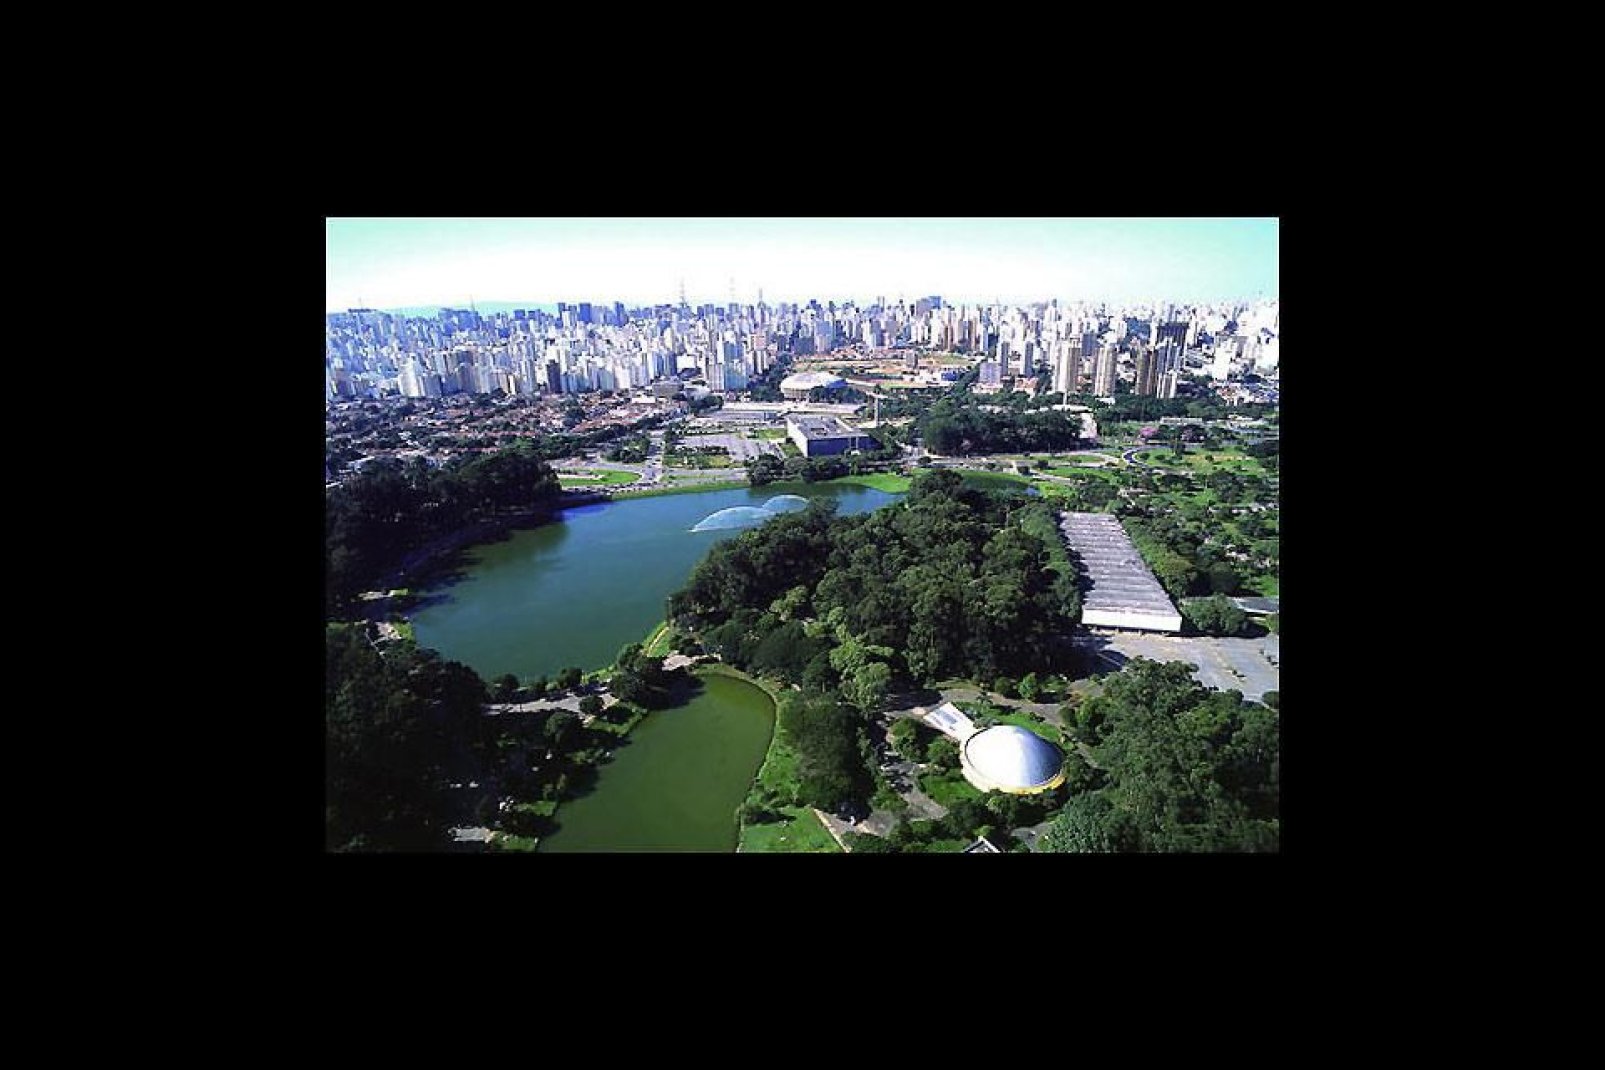 El mayor parque público de la ciudad con 1,5 millones de m2 de zona verde.